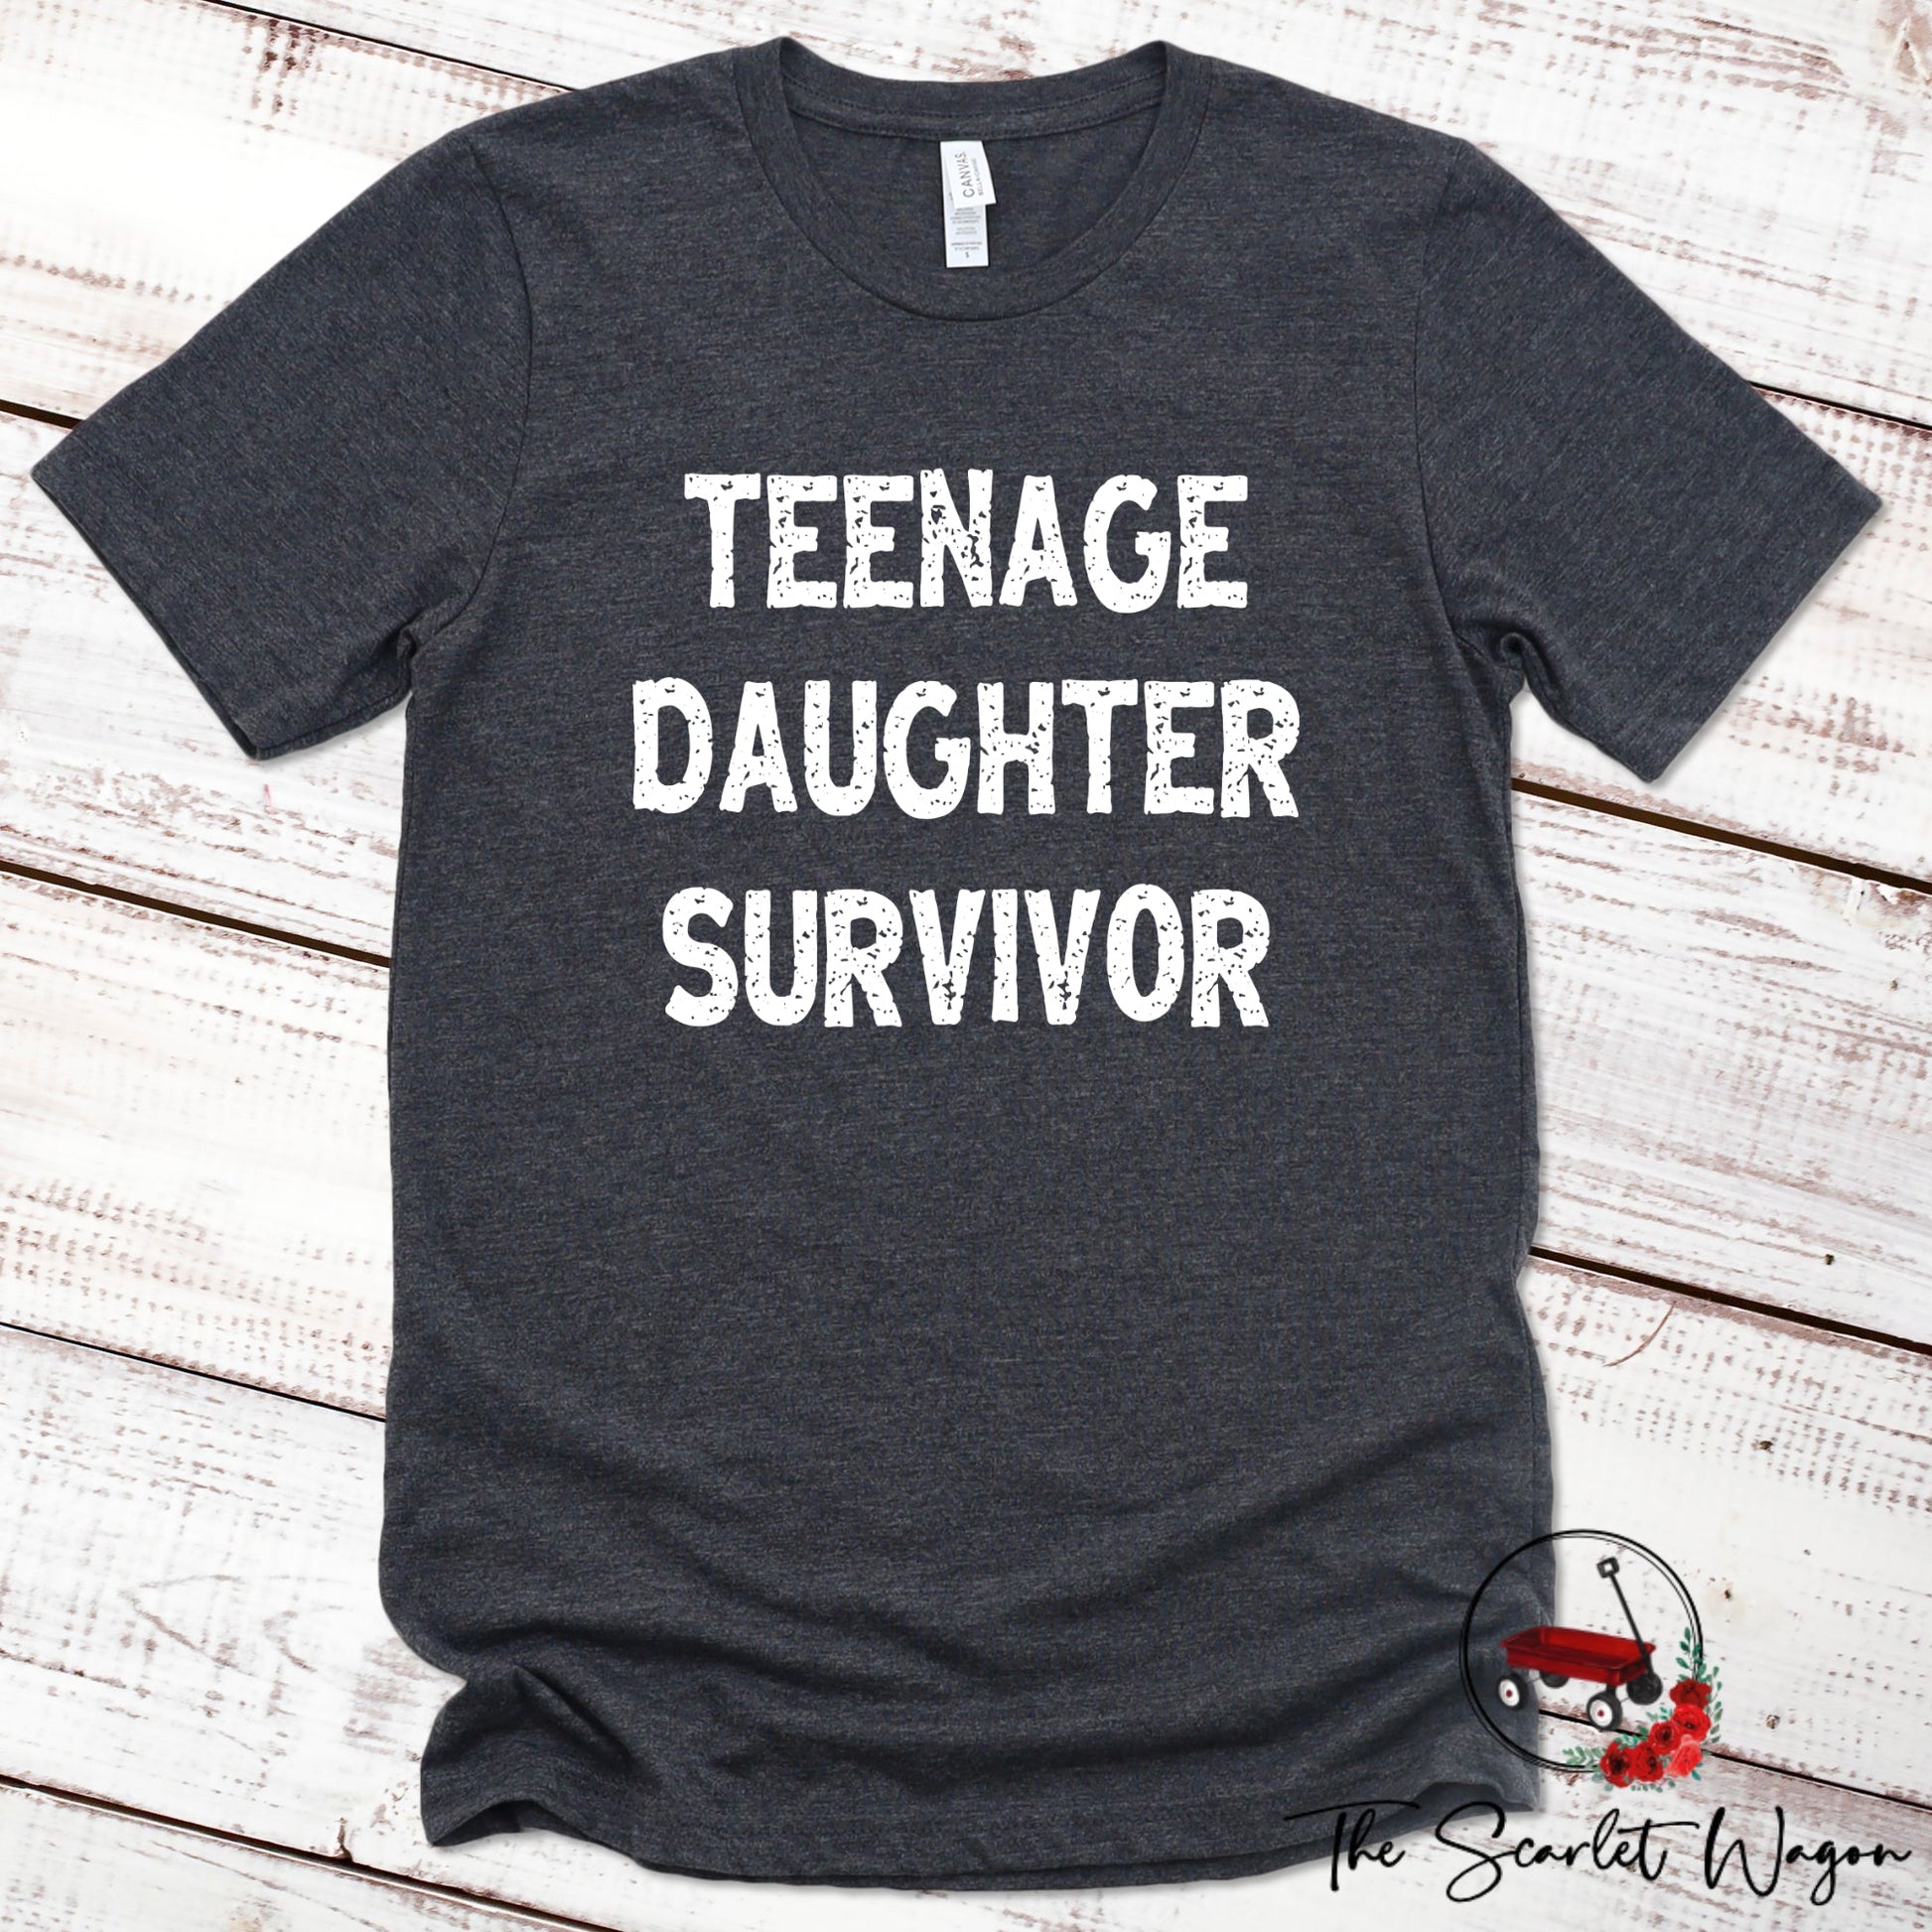 Teenage Daughter Survivor Premium Tee Scarlet Wagon Dark Gray Heather XS 